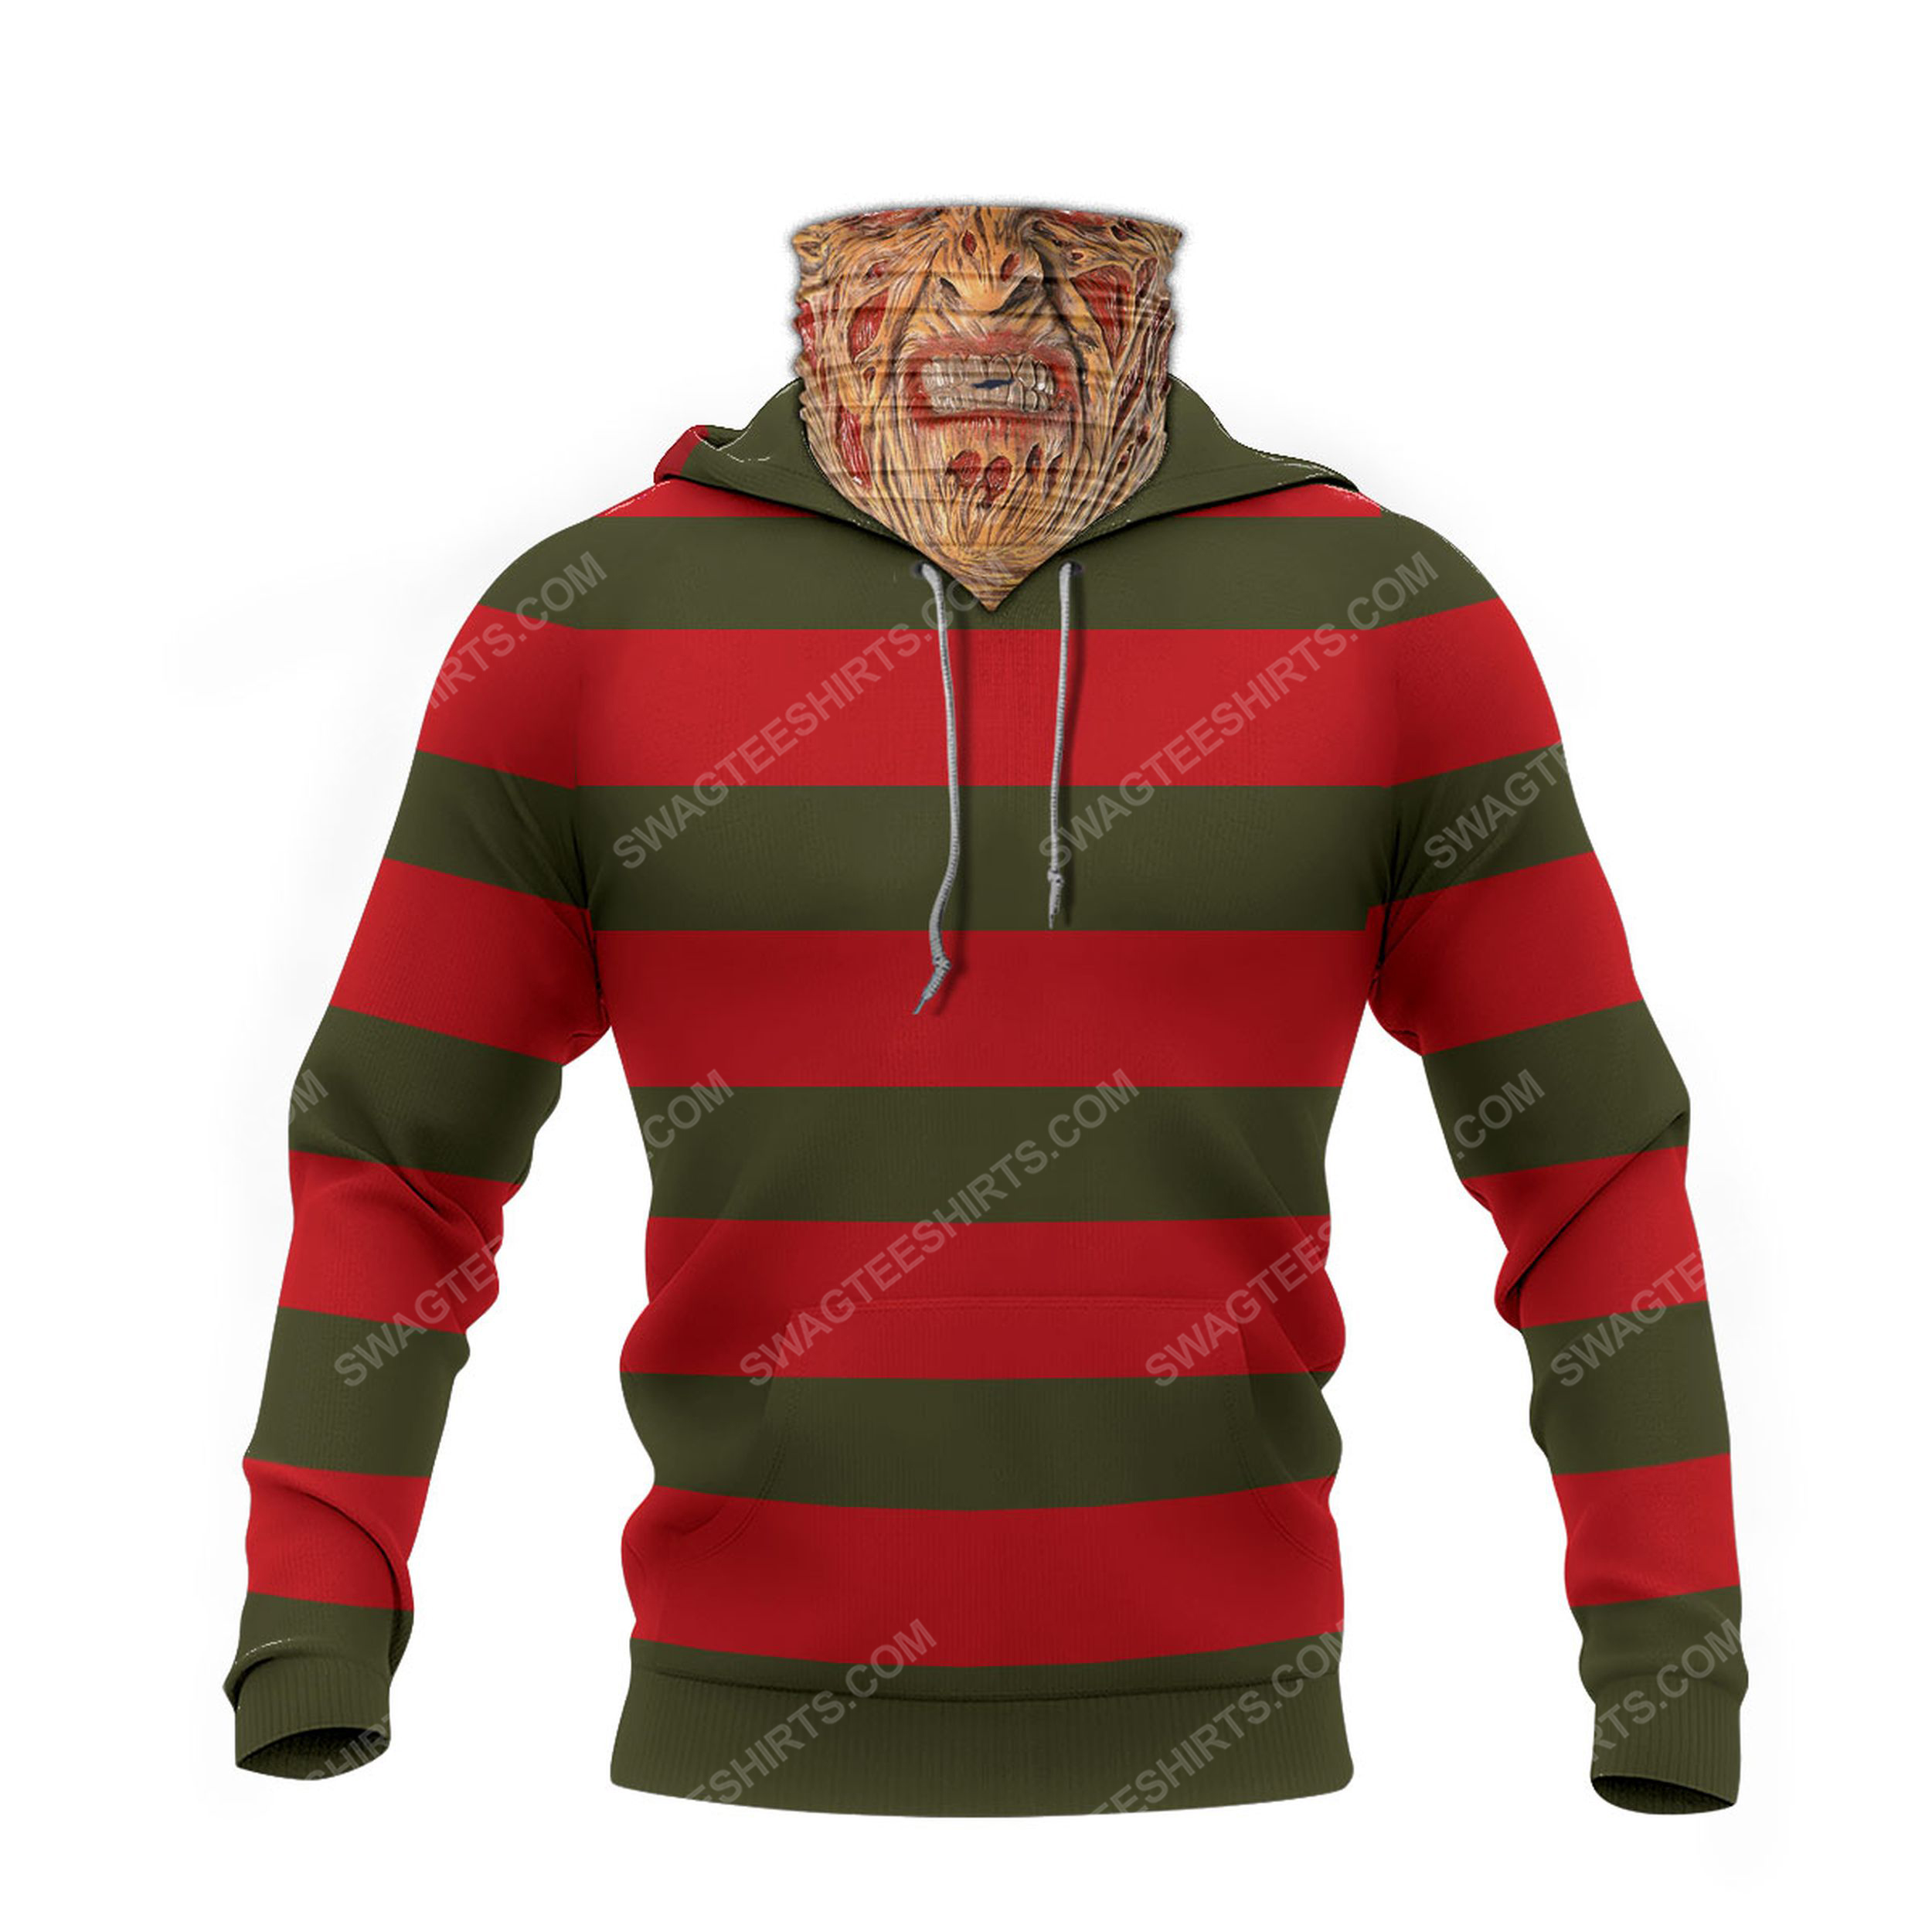 Freddy krueger a nightmare on elm street full print mask hoodie 1(1)